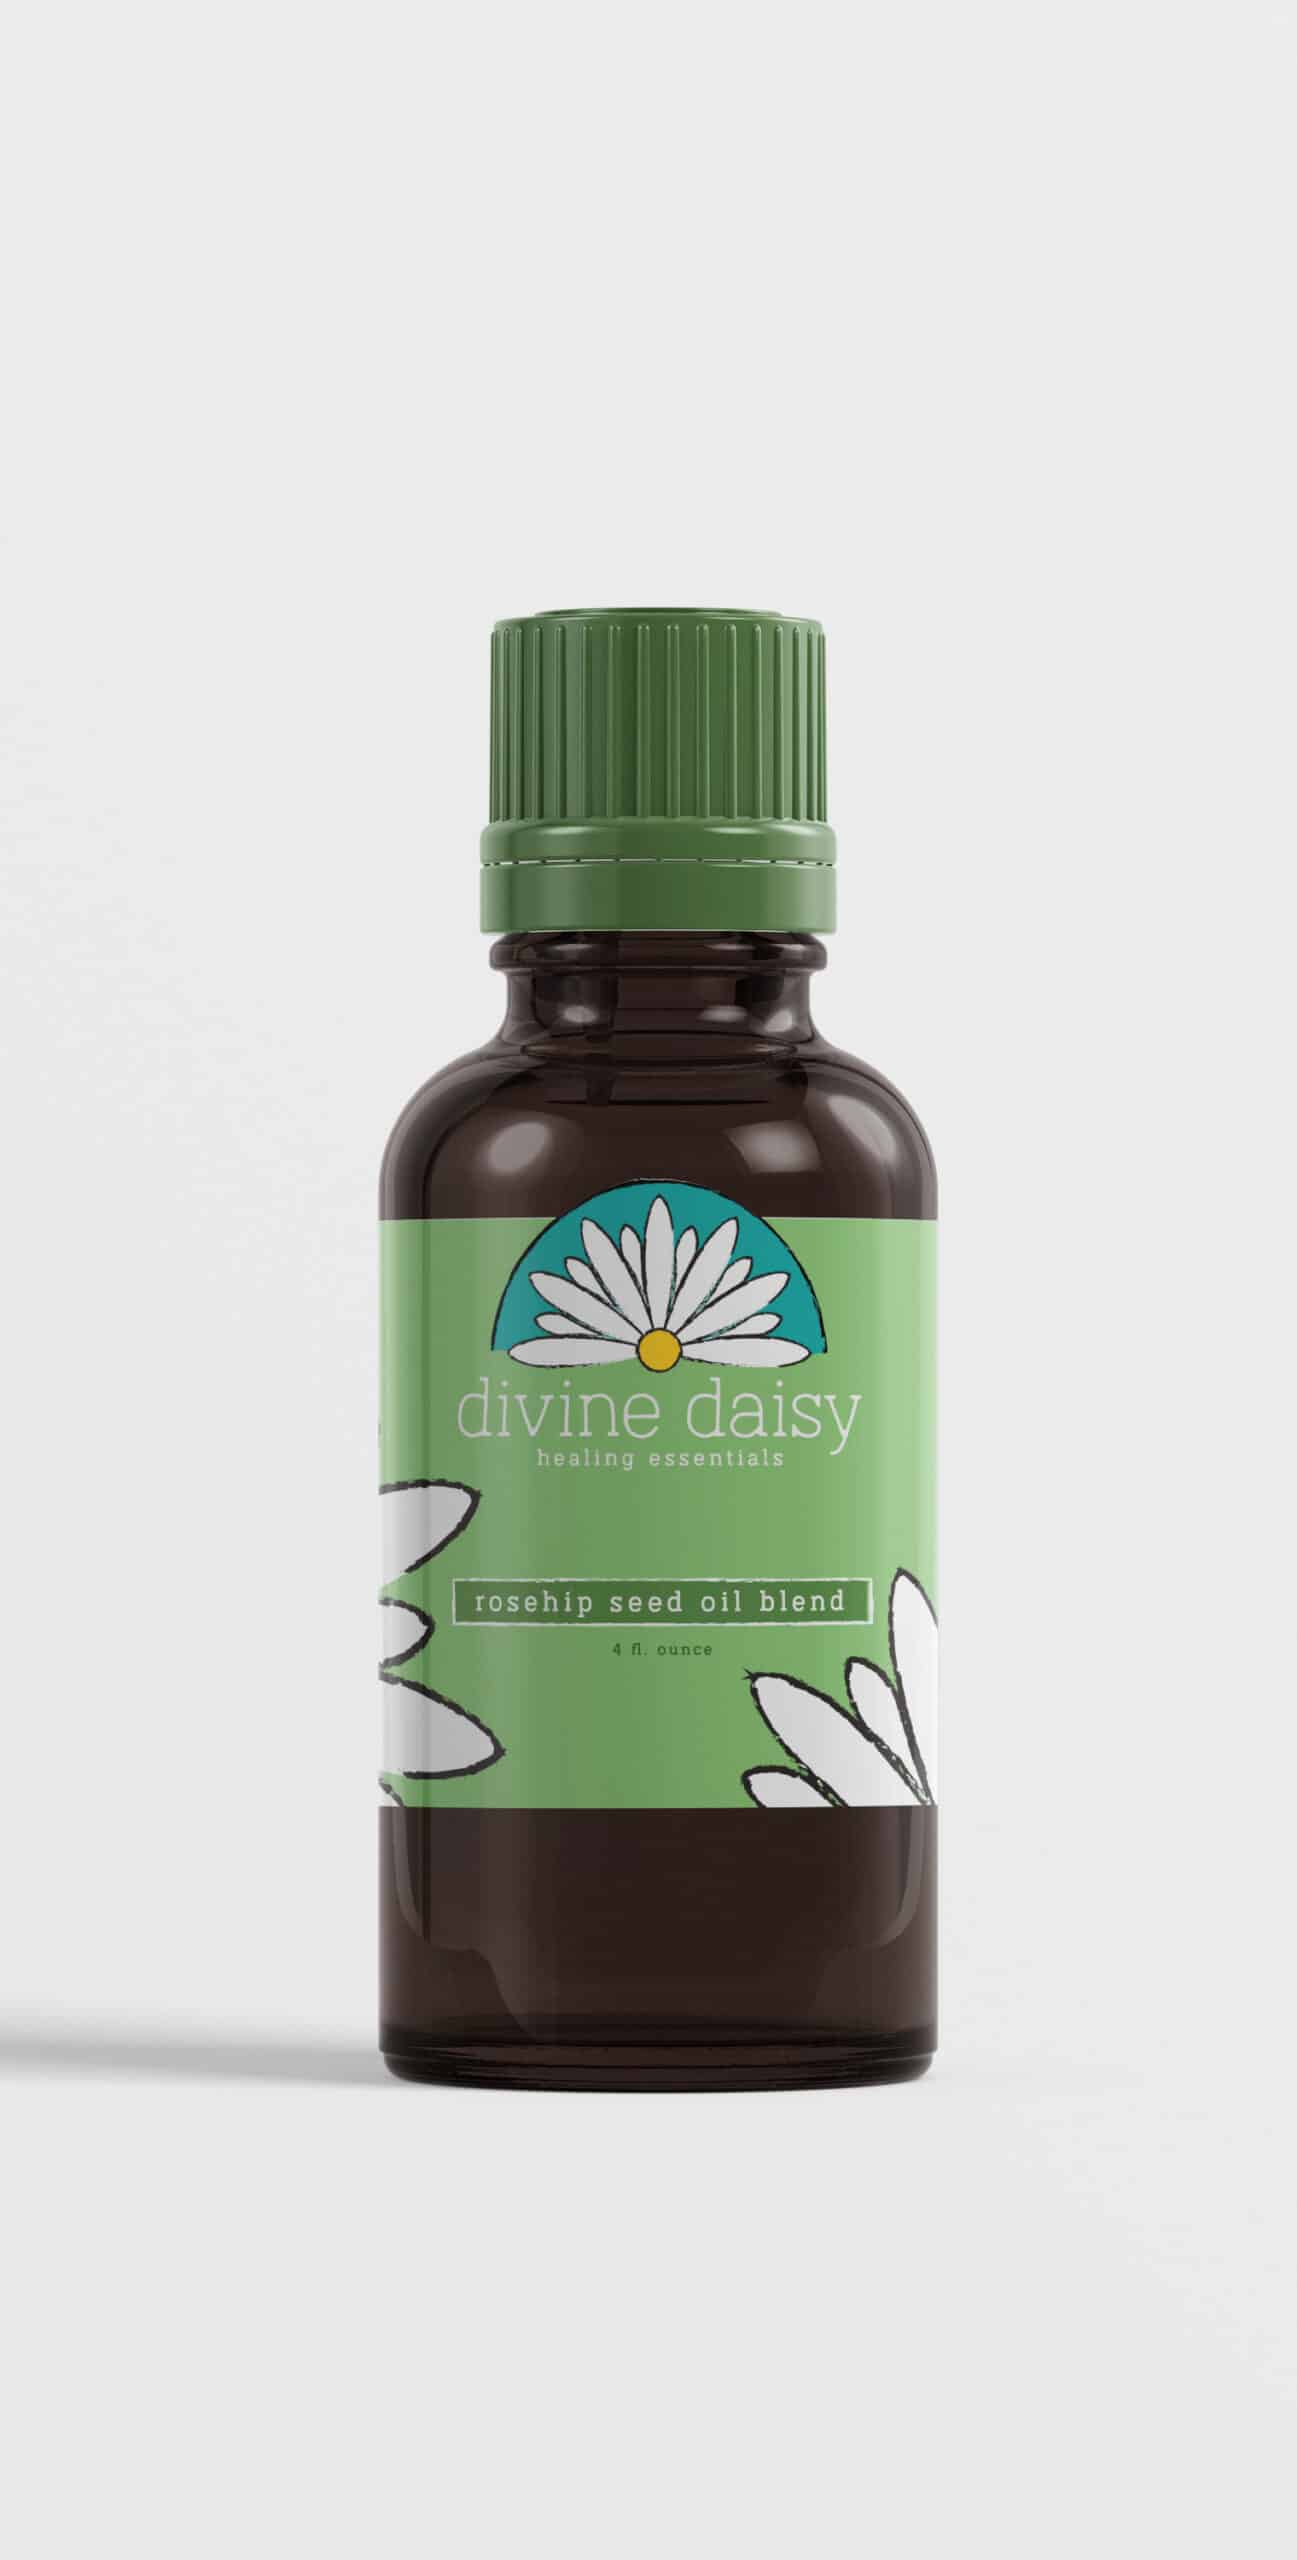 Divine-Daisy-Bottle-Product-Design